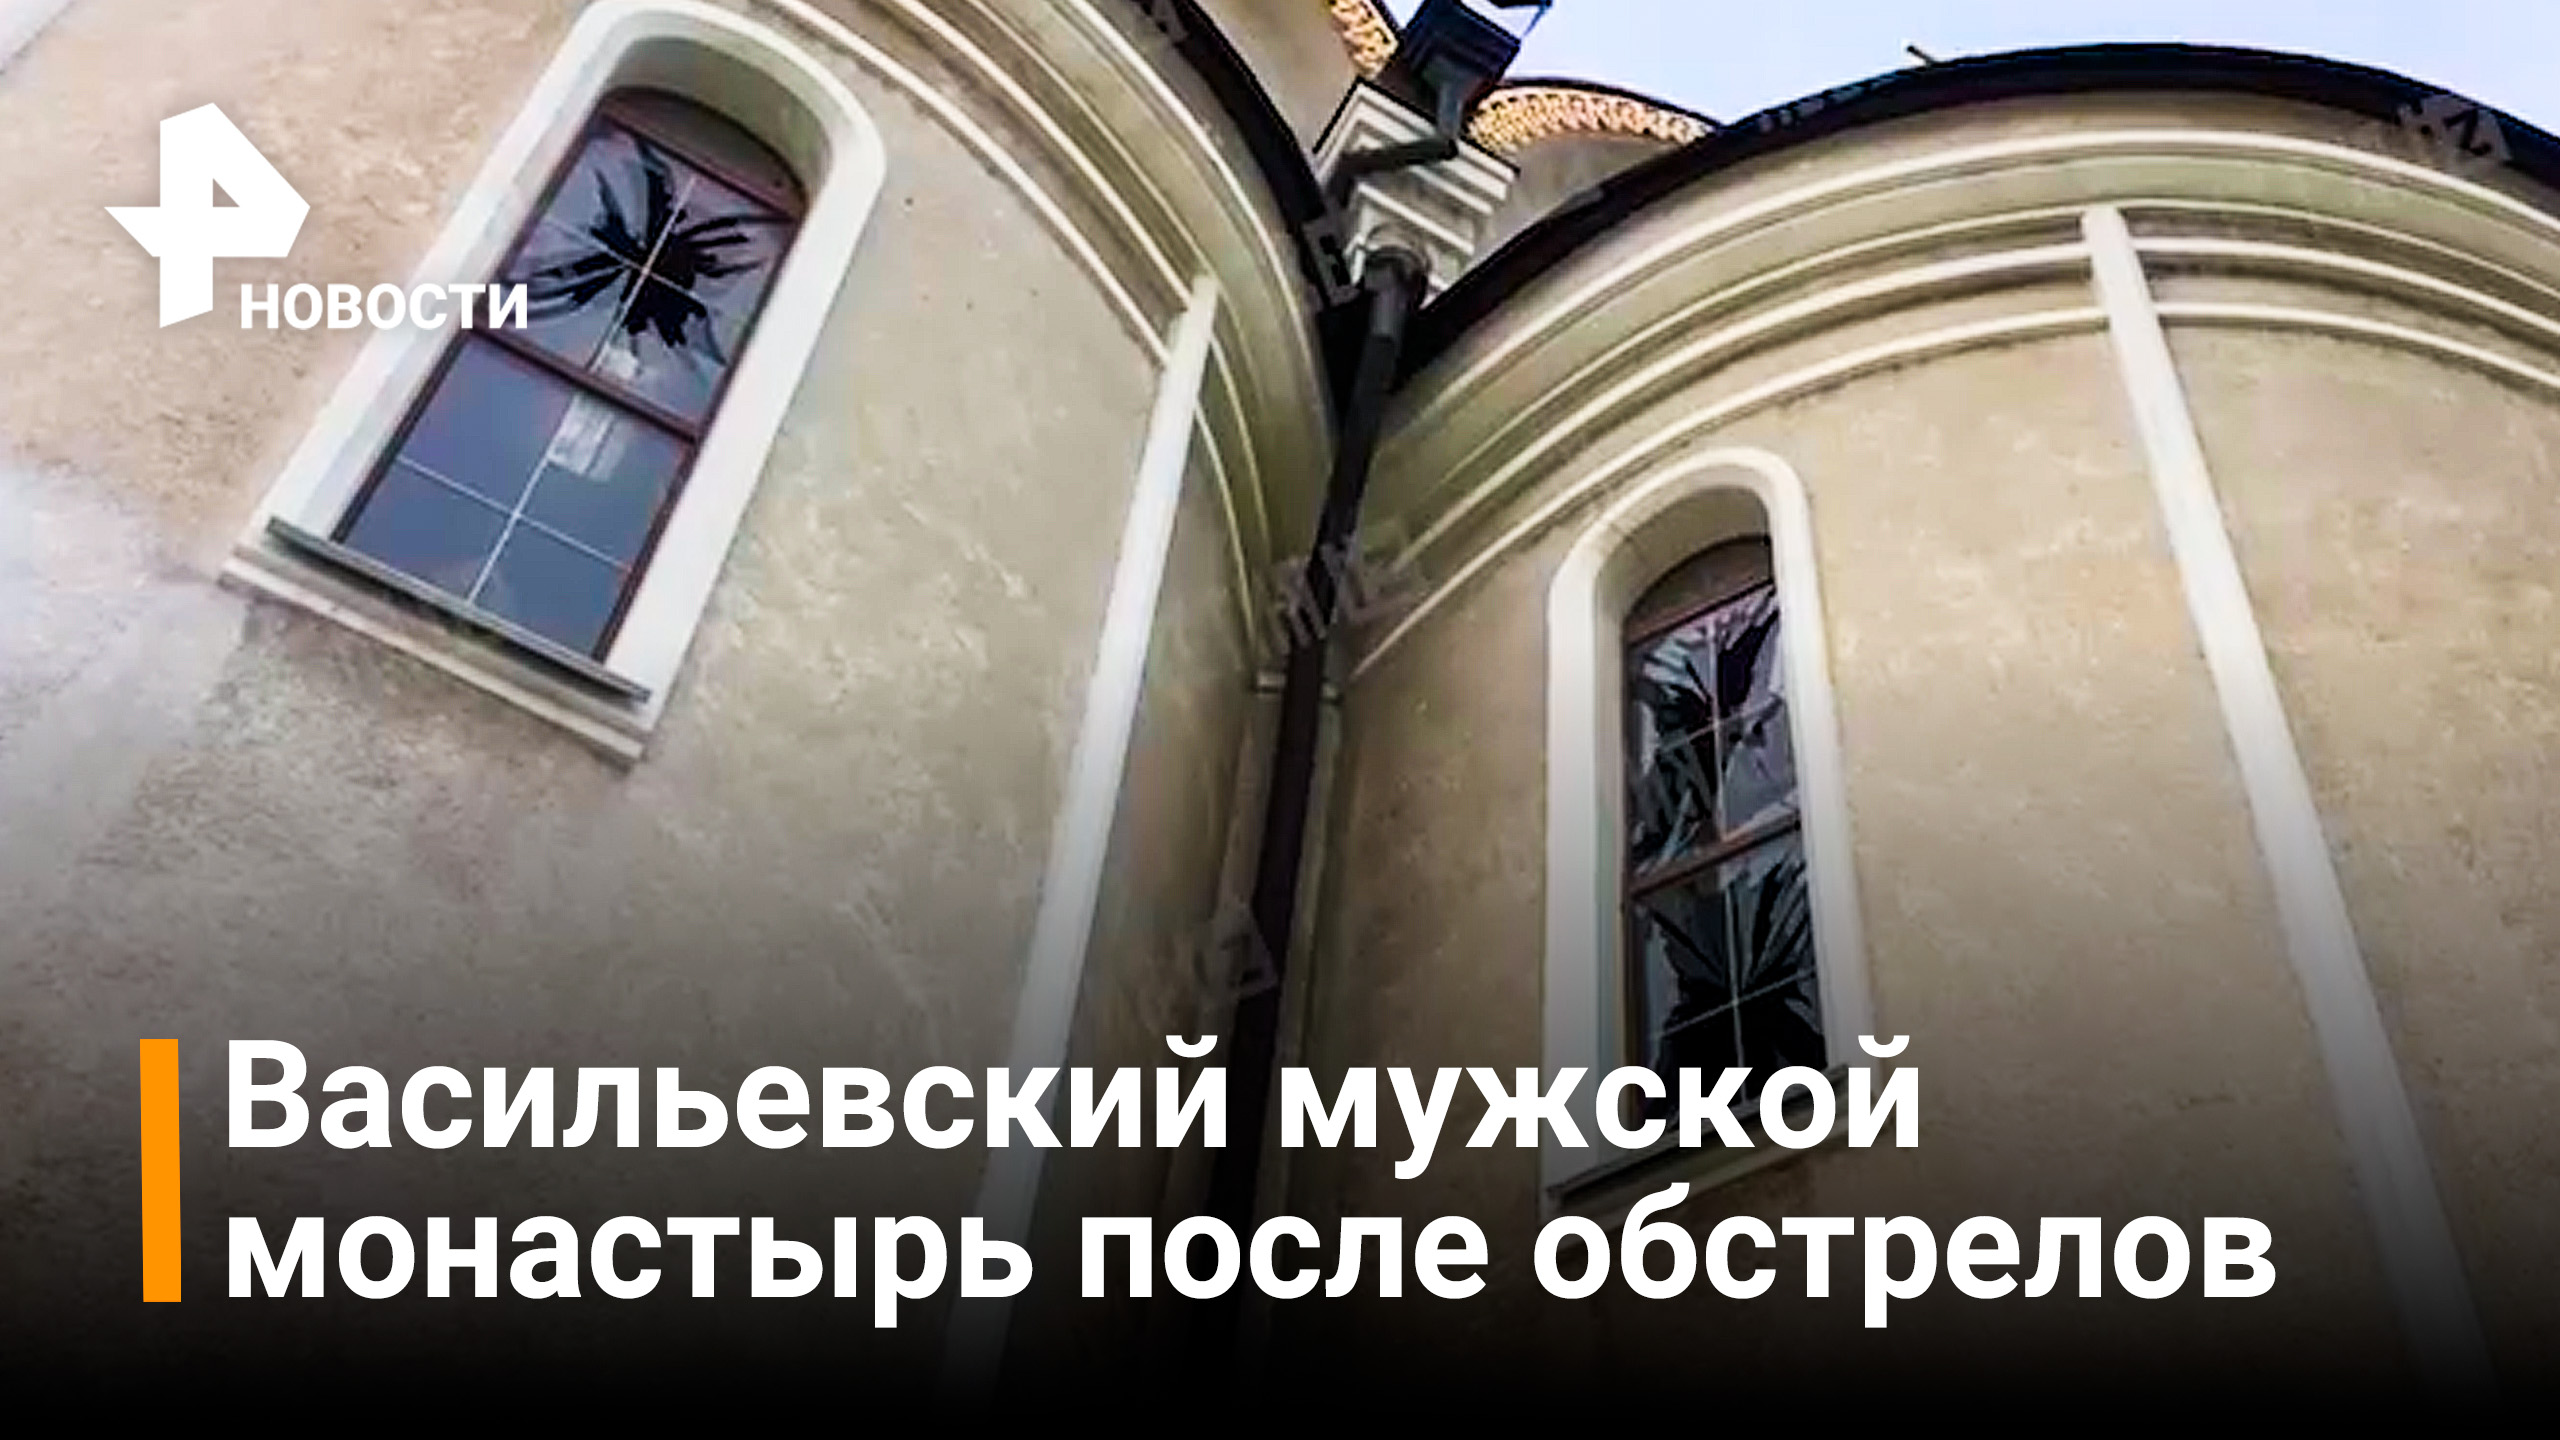 Николо-Васильевский монастырь пострадал от обстрелов ВСУ / РЕН Новости